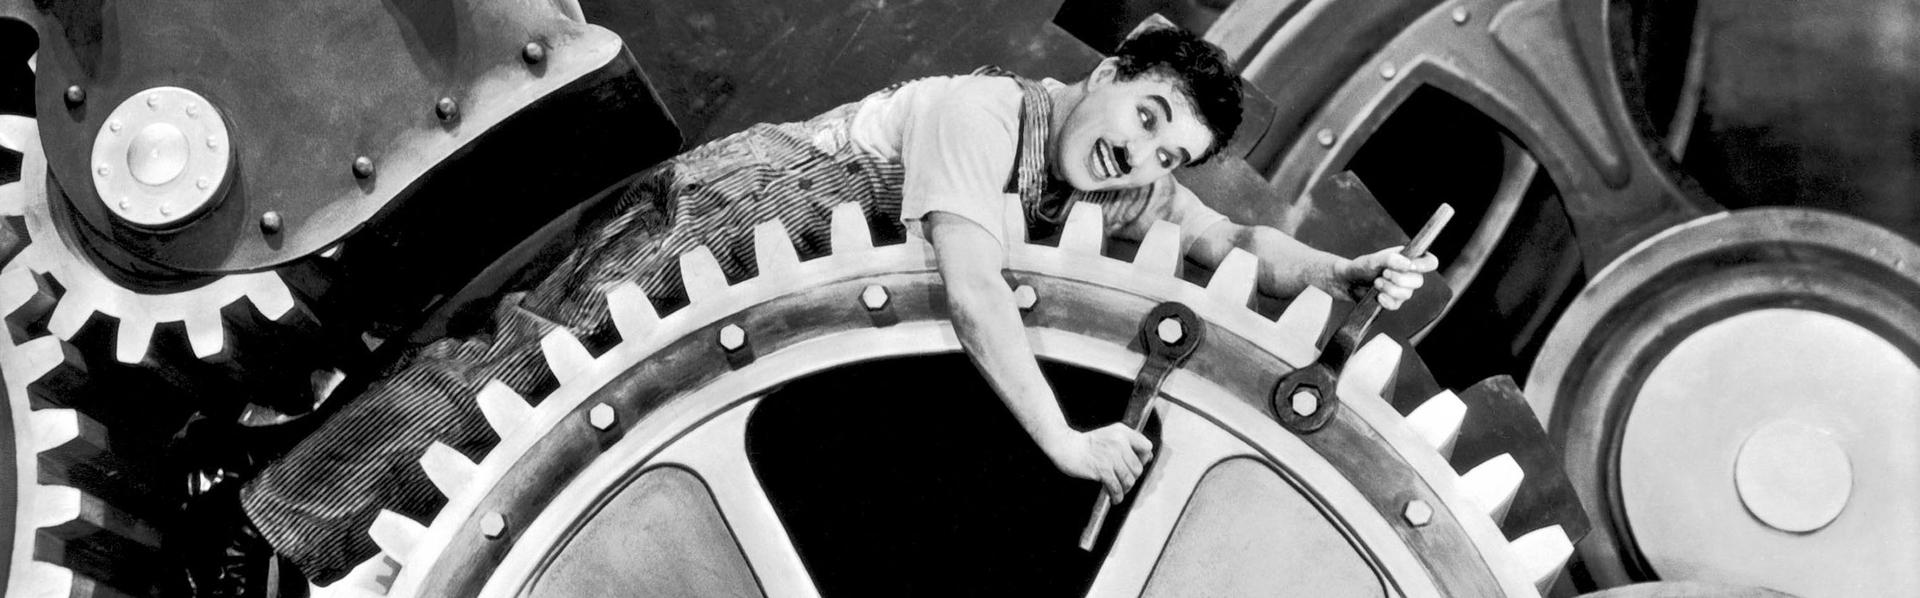 Charlie Chaplin dans "Les Temps modernes". [AFP - CHARLES CHAPLIN PRODUCTIONS / COLLECTION CHRISTOPHEL]